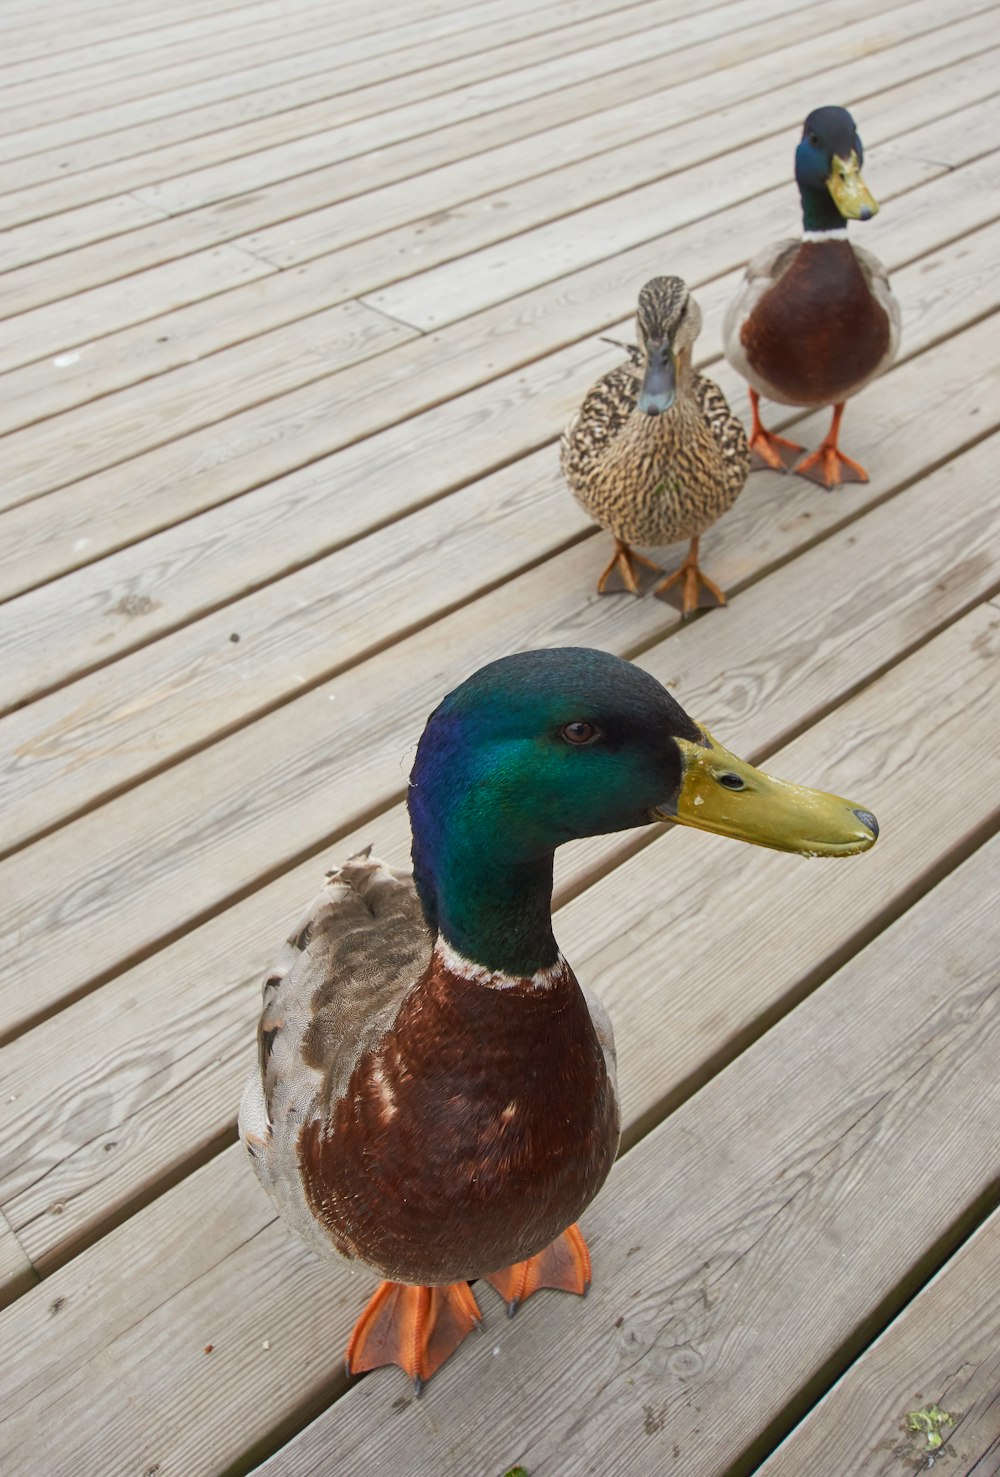 three ducks on wooden surface